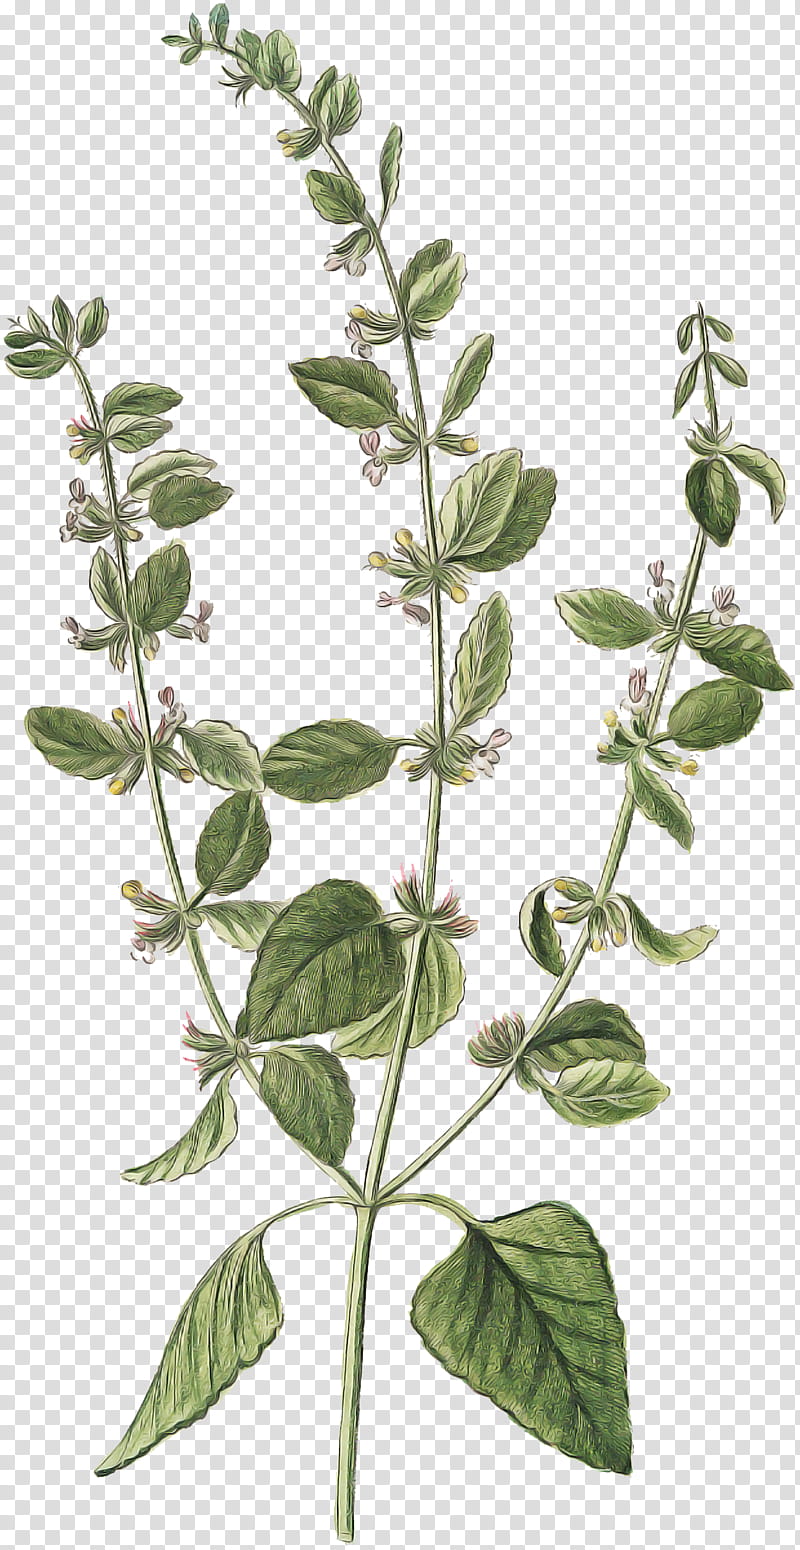 flower plant leaf tree herb, Plant Stem, Subshrub, Marjoram, Basil transparent background PNG clipart